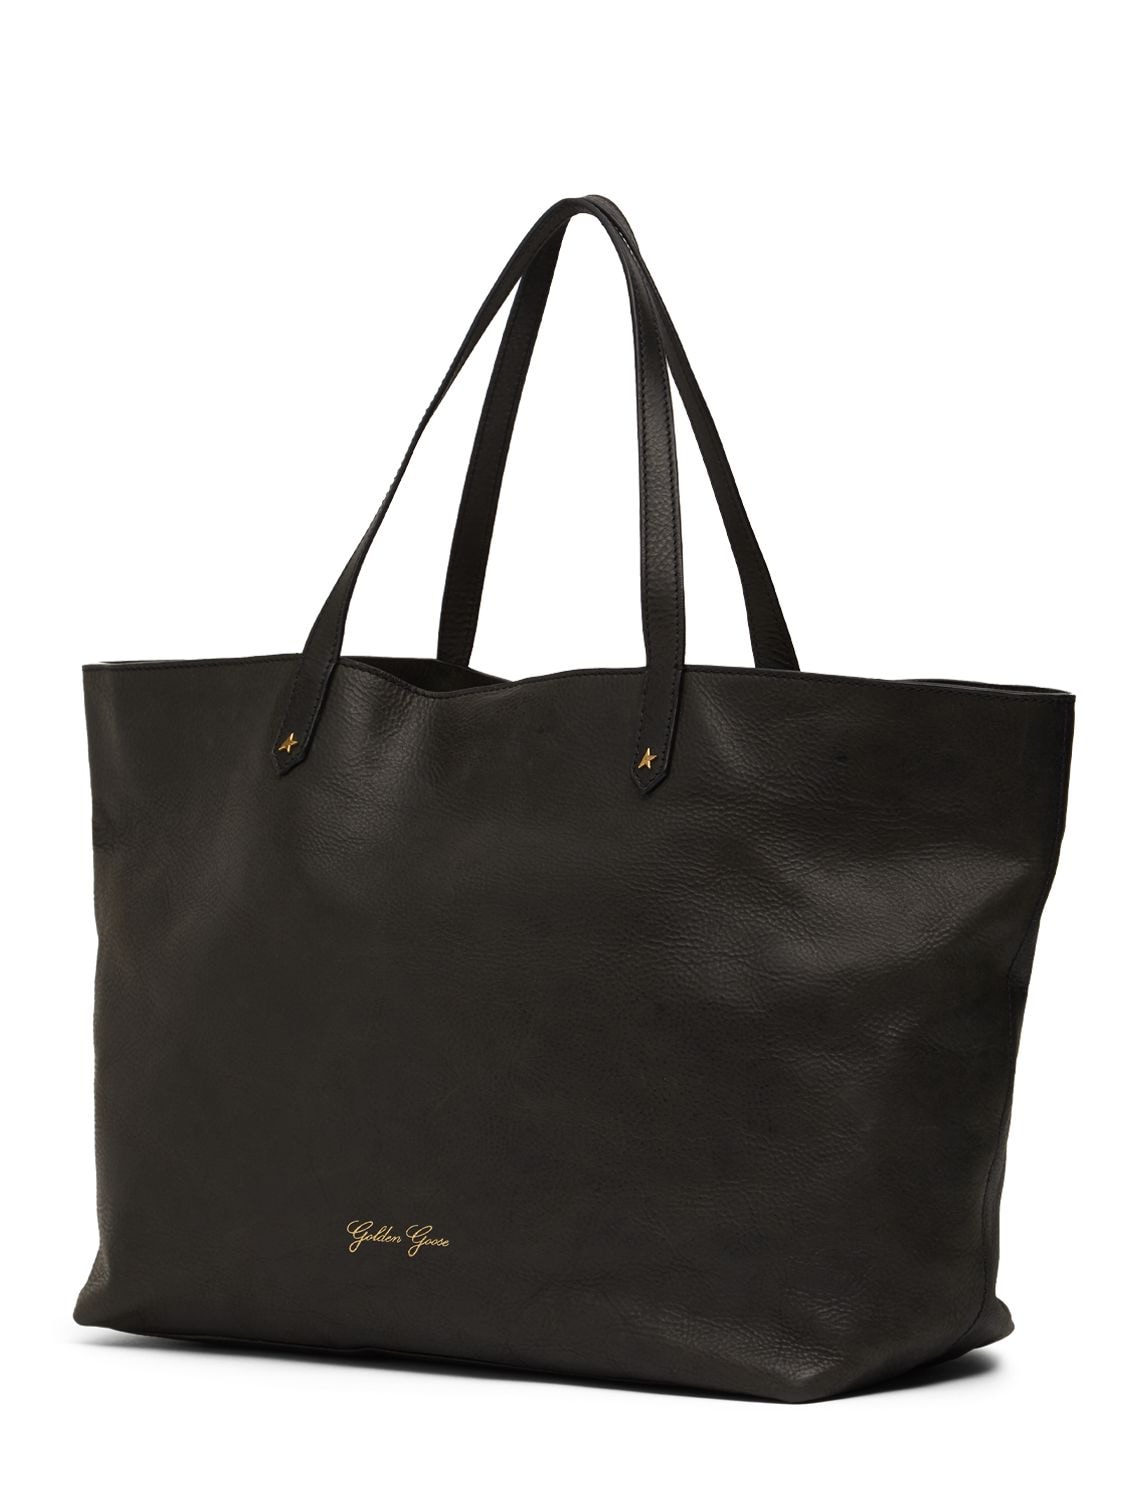 Shop Golden Goose Golden Pasadena Leather Tote Bag In Black